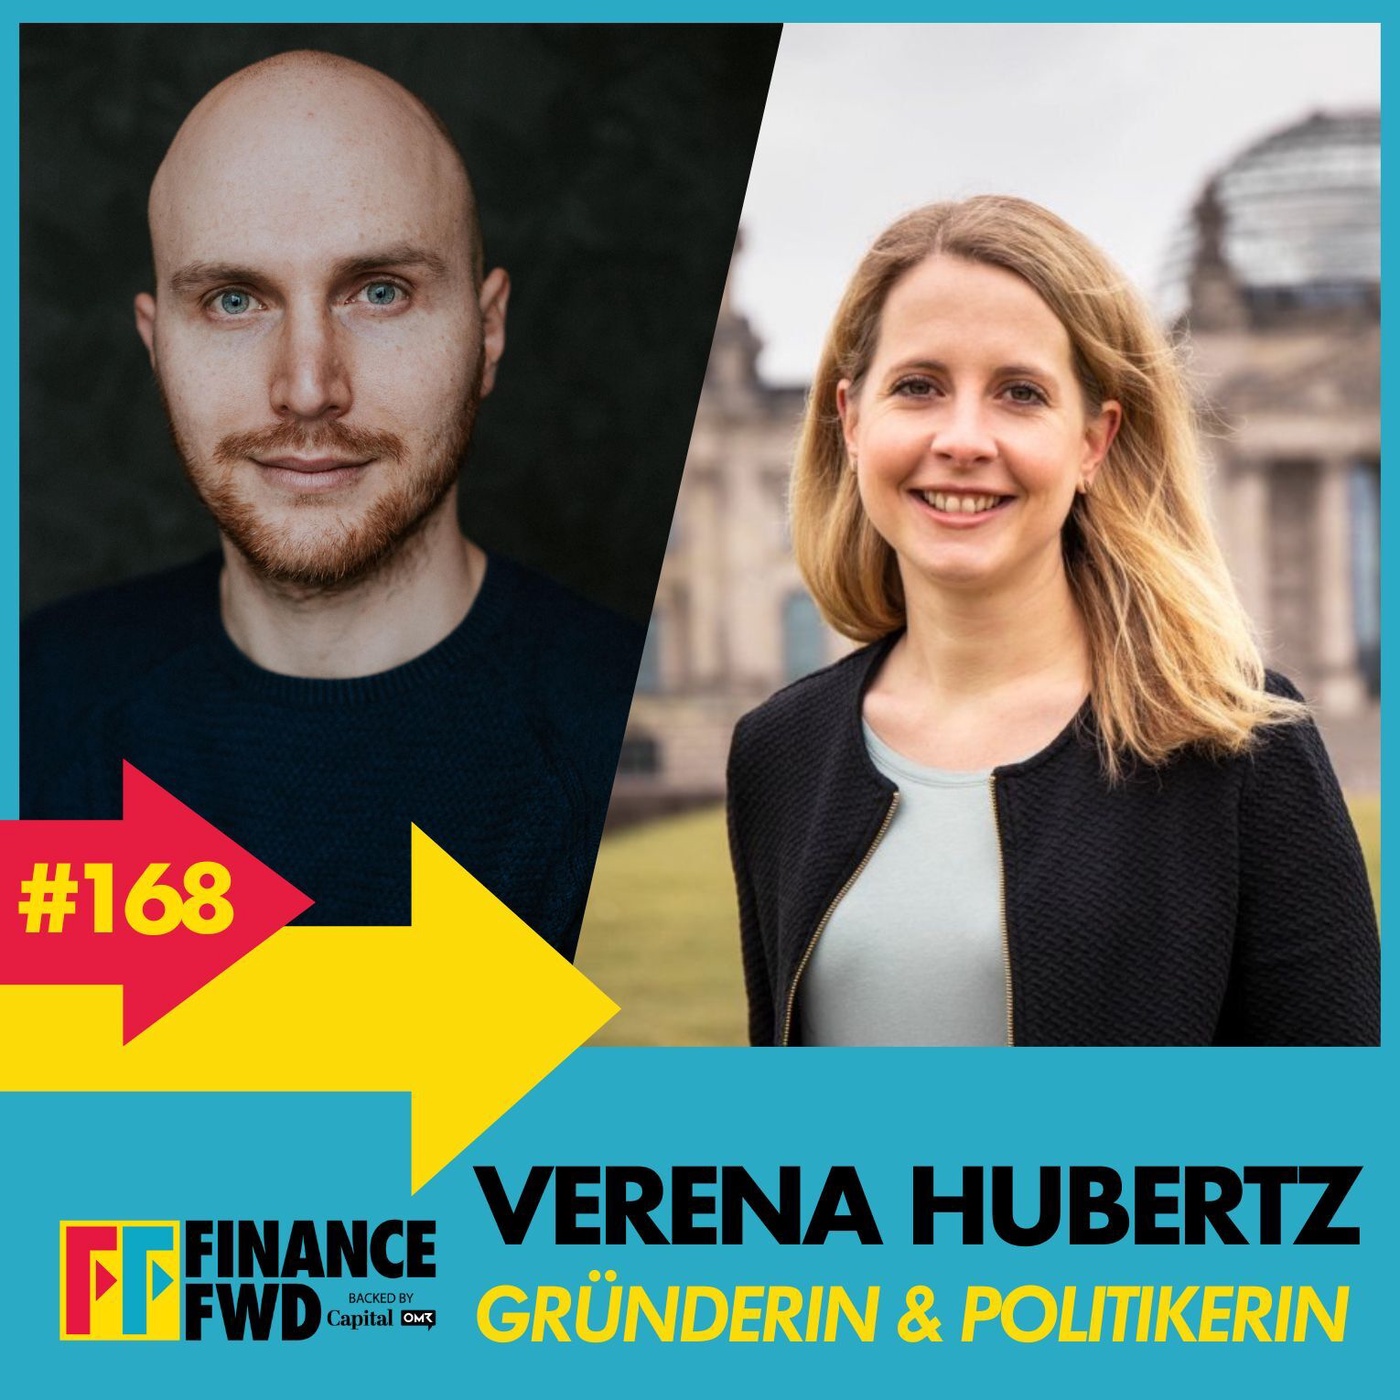 FinanceFWD #168 mit SPD-Politikerin und Gründerin Verena Hubertz